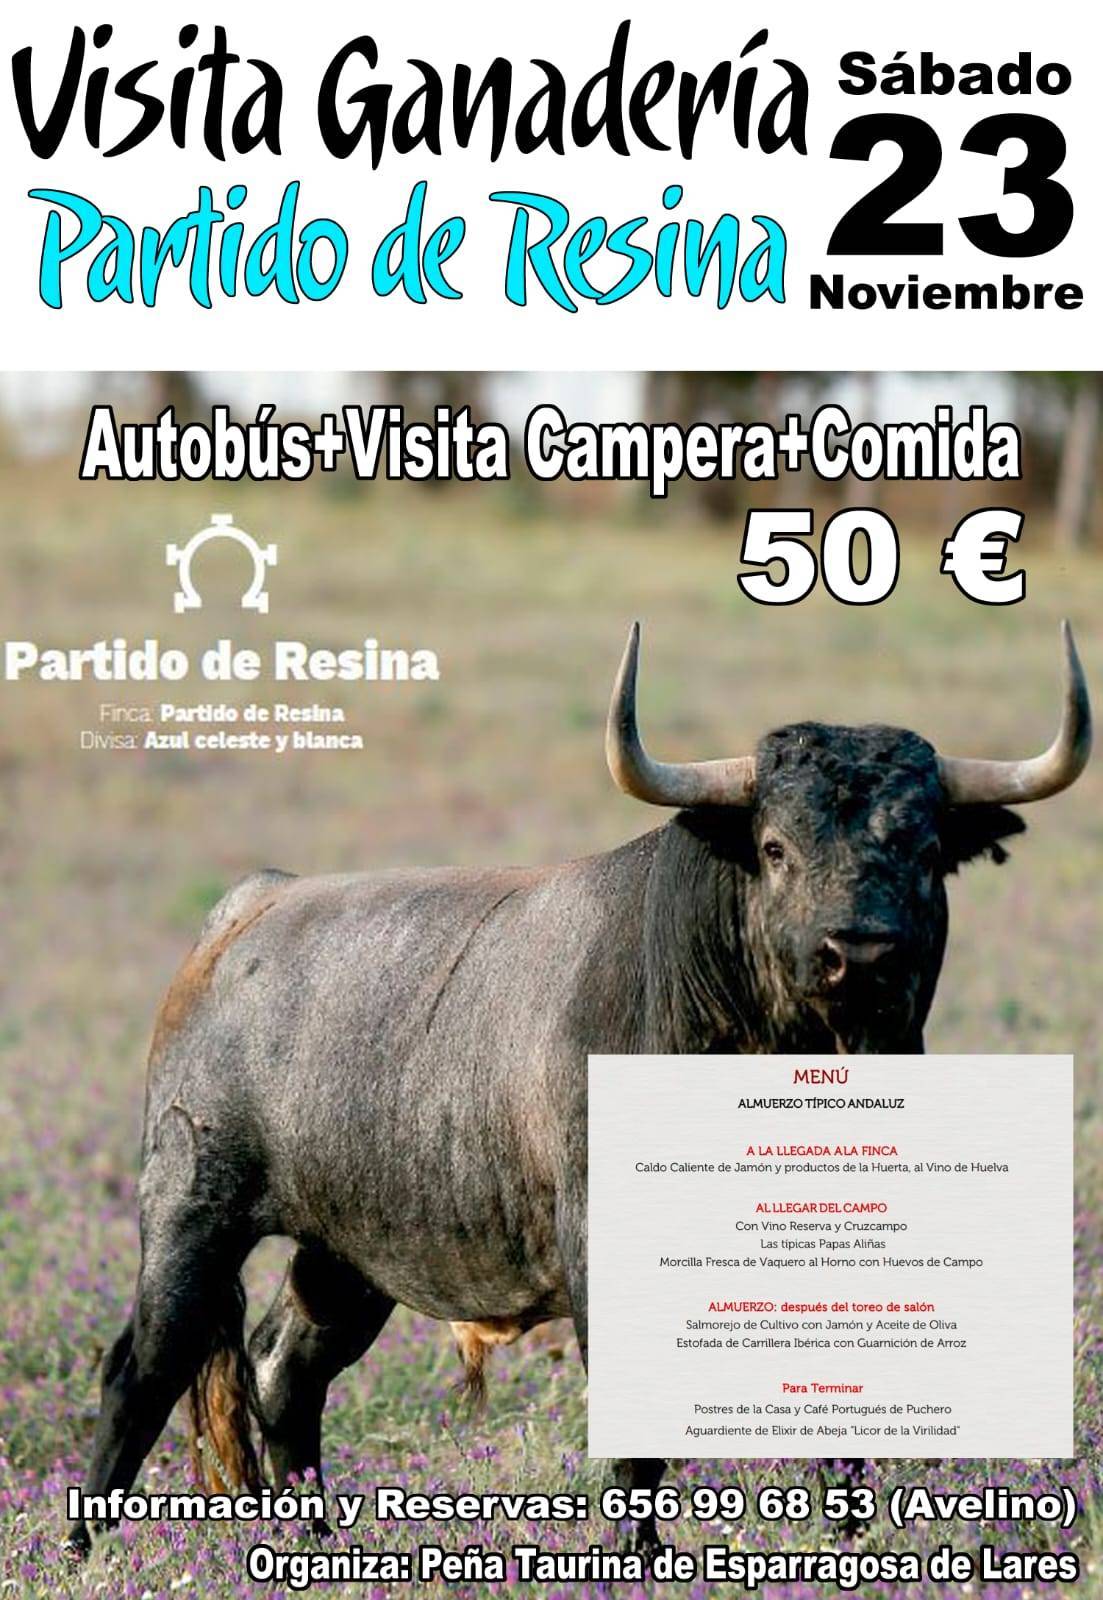 Visita a la ganadería Partido de Resina 2019 - Esparragosa de Lares (Badajoz)